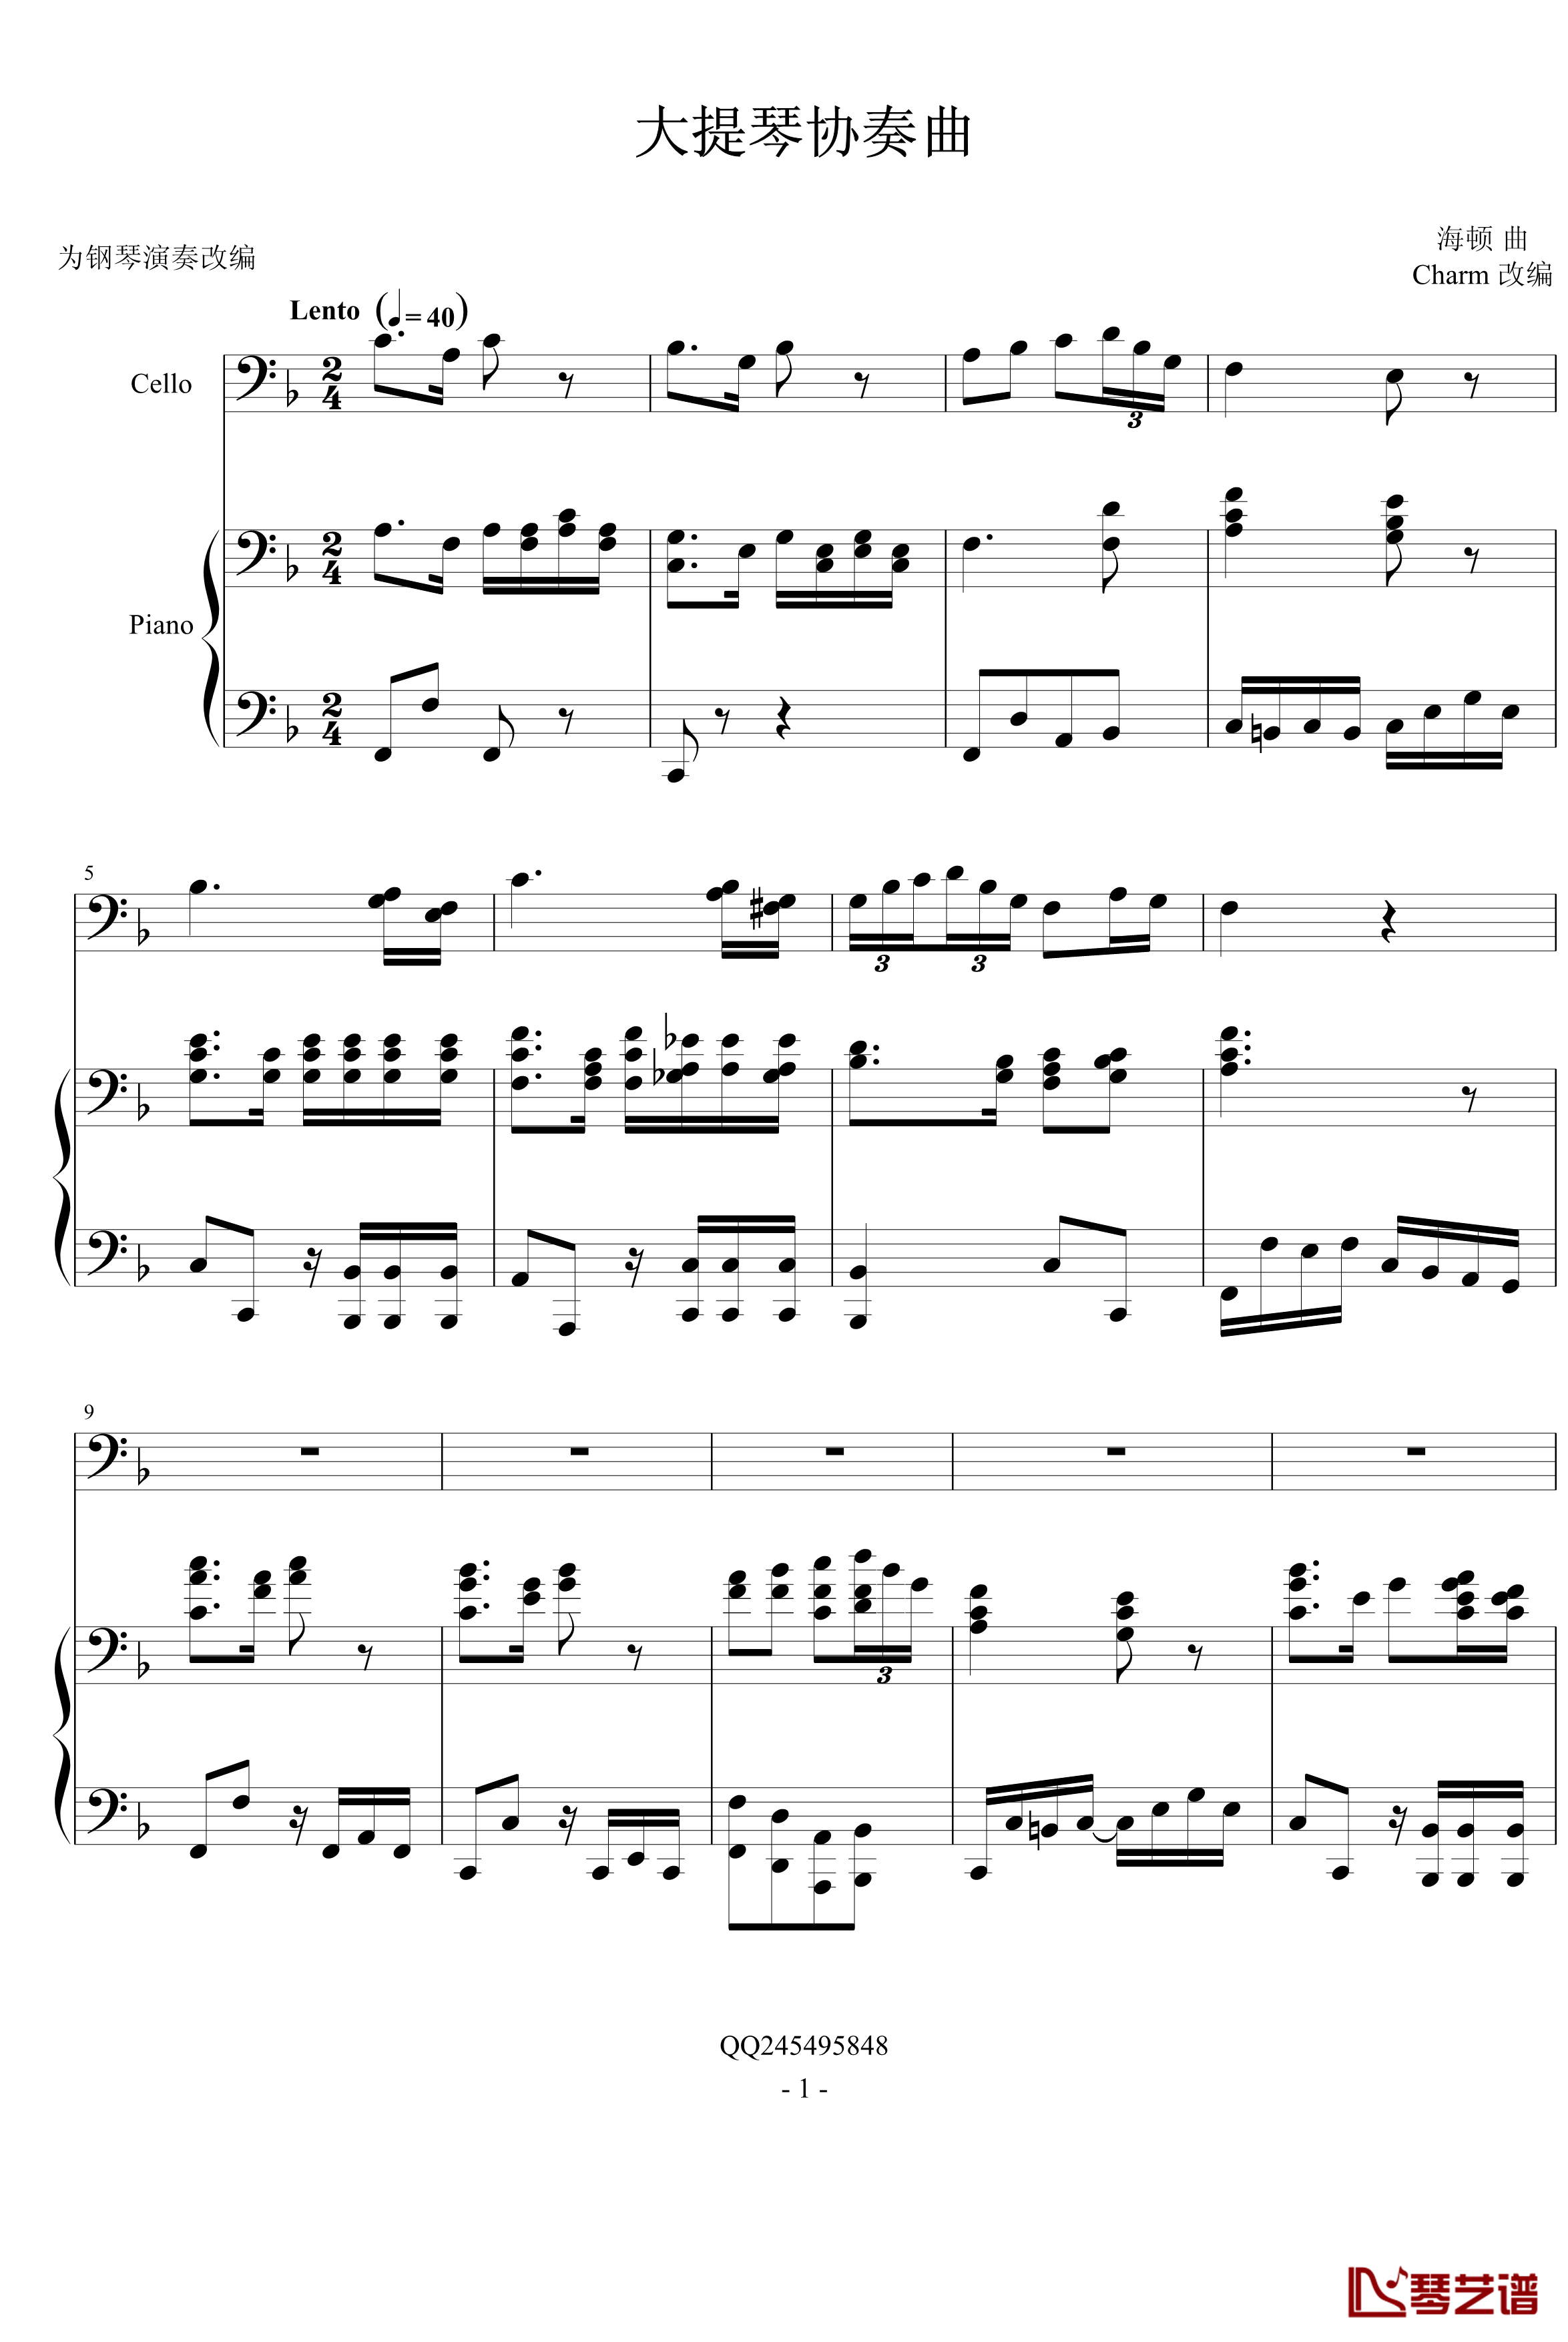 大提琴协奏曲钢琴谱-海顿1